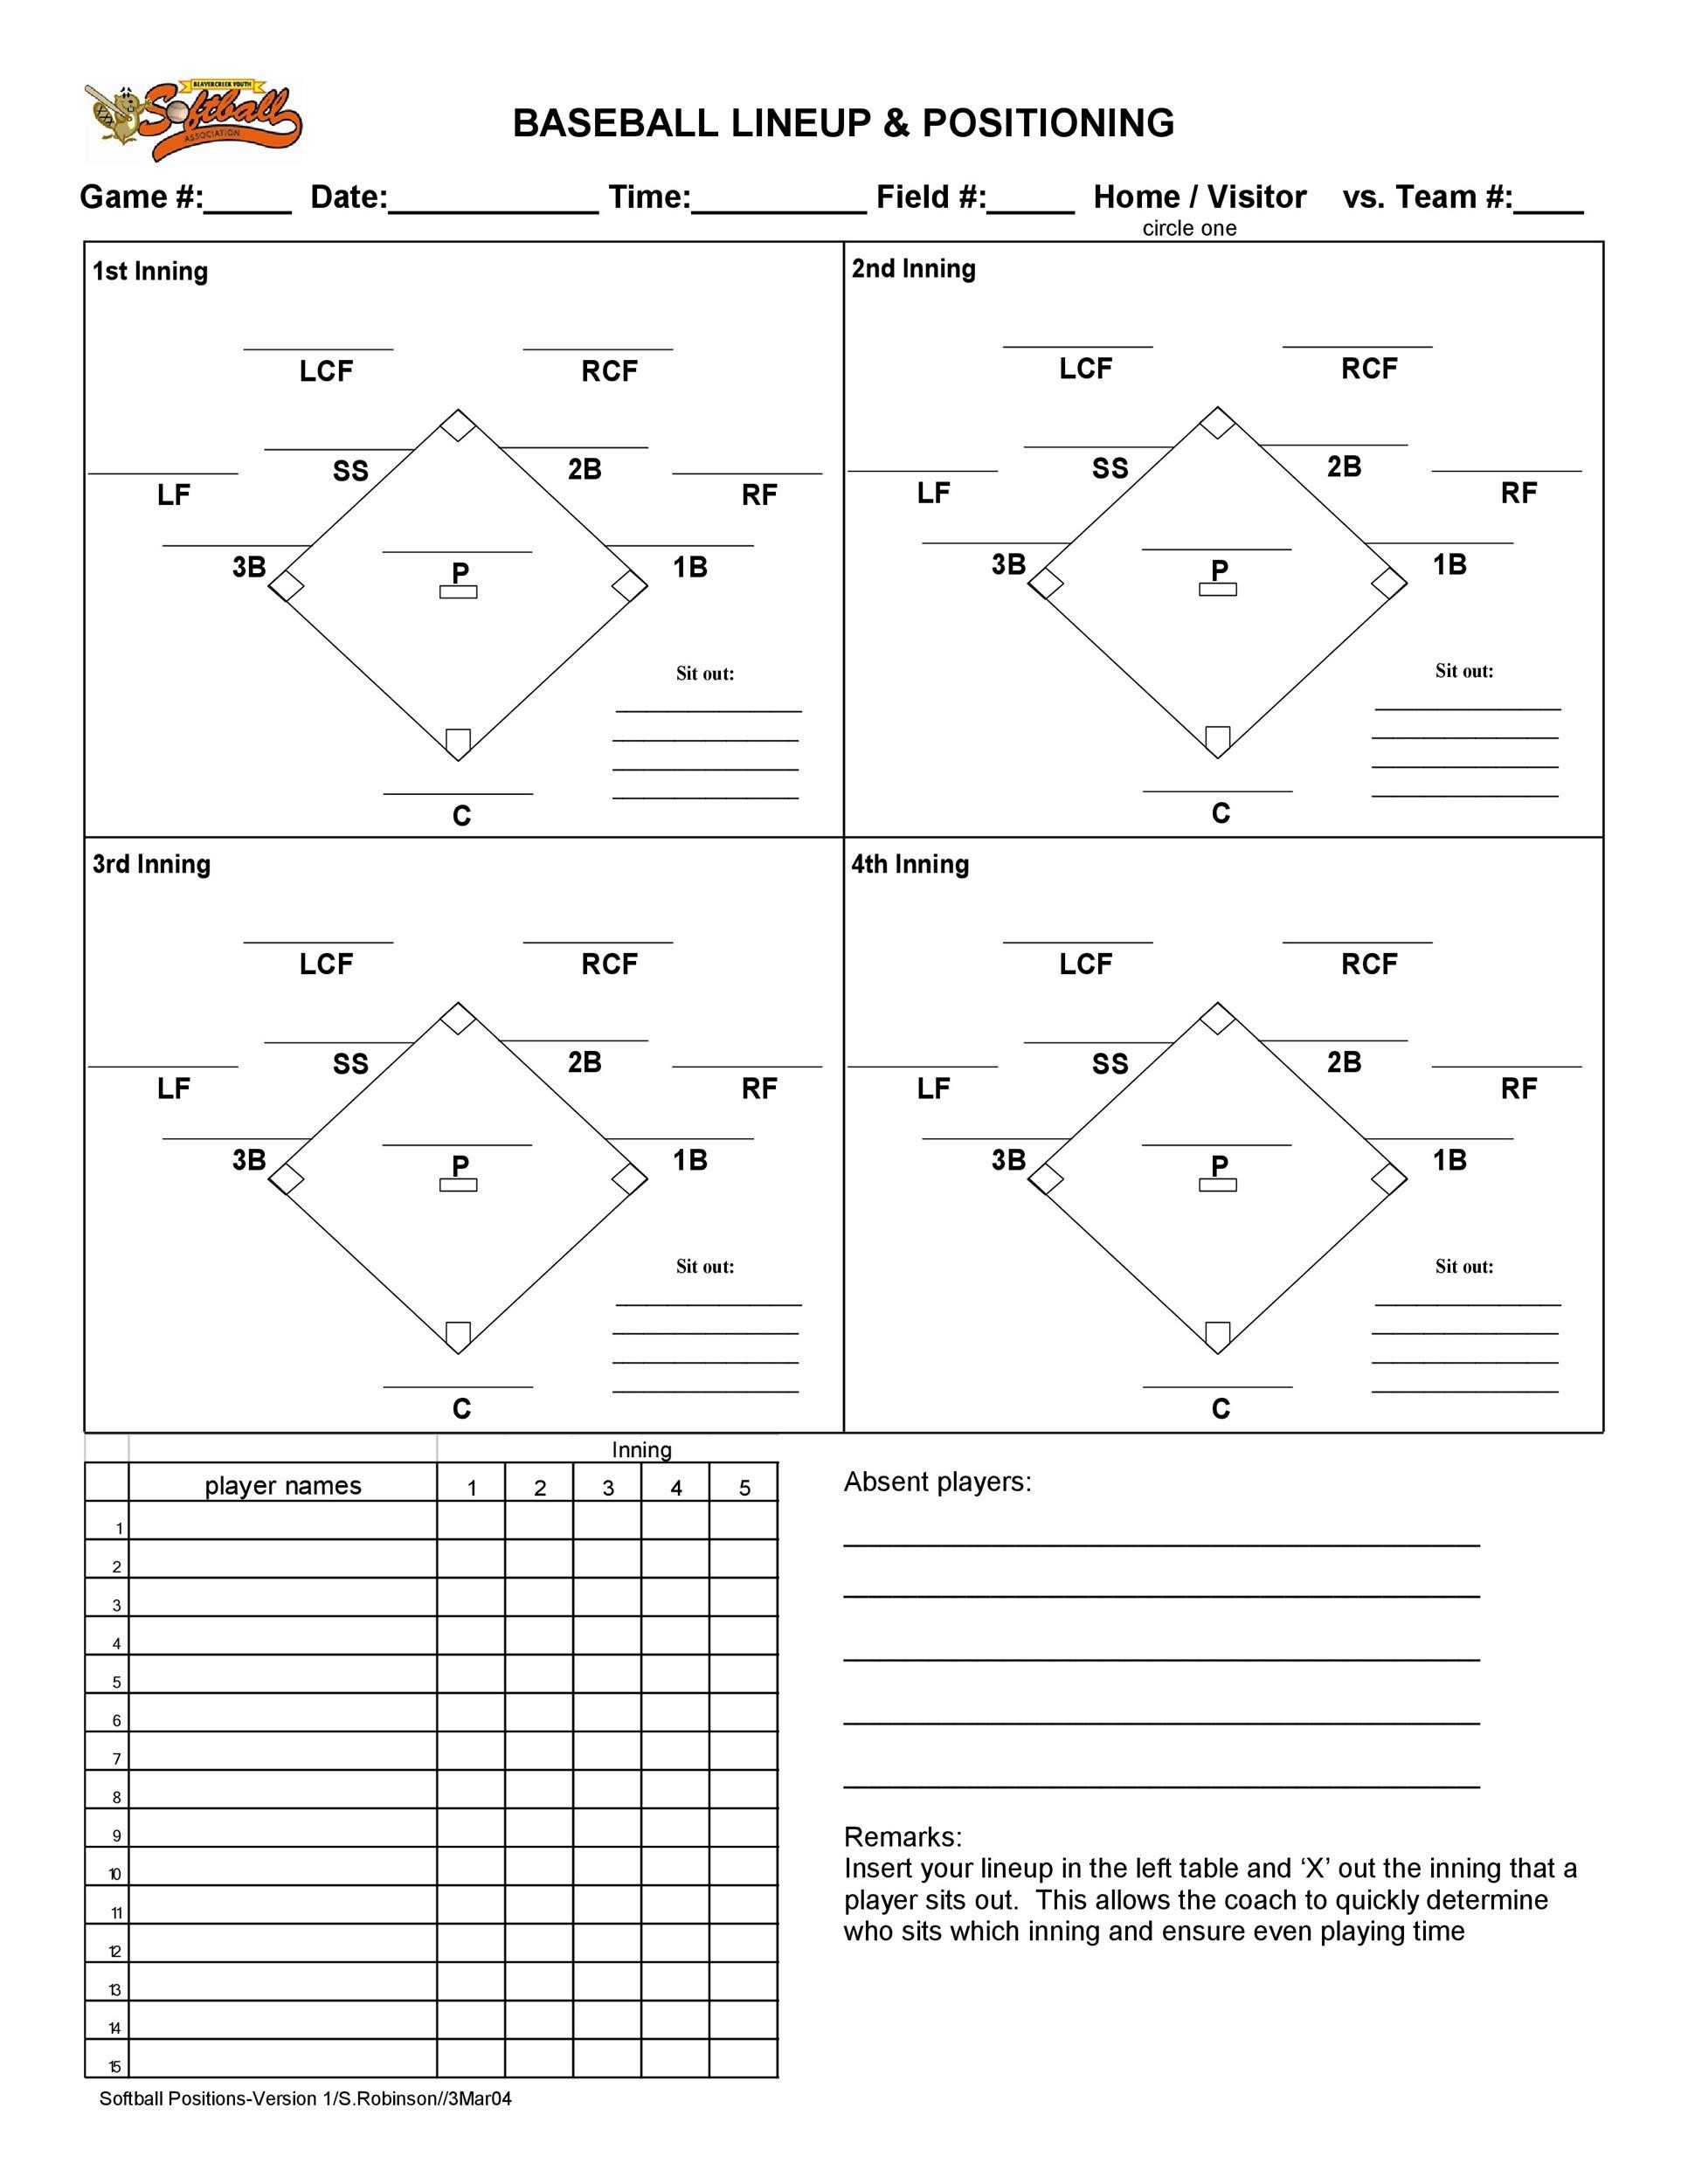 Free Printable Softball Lineup Template Printable Blank World